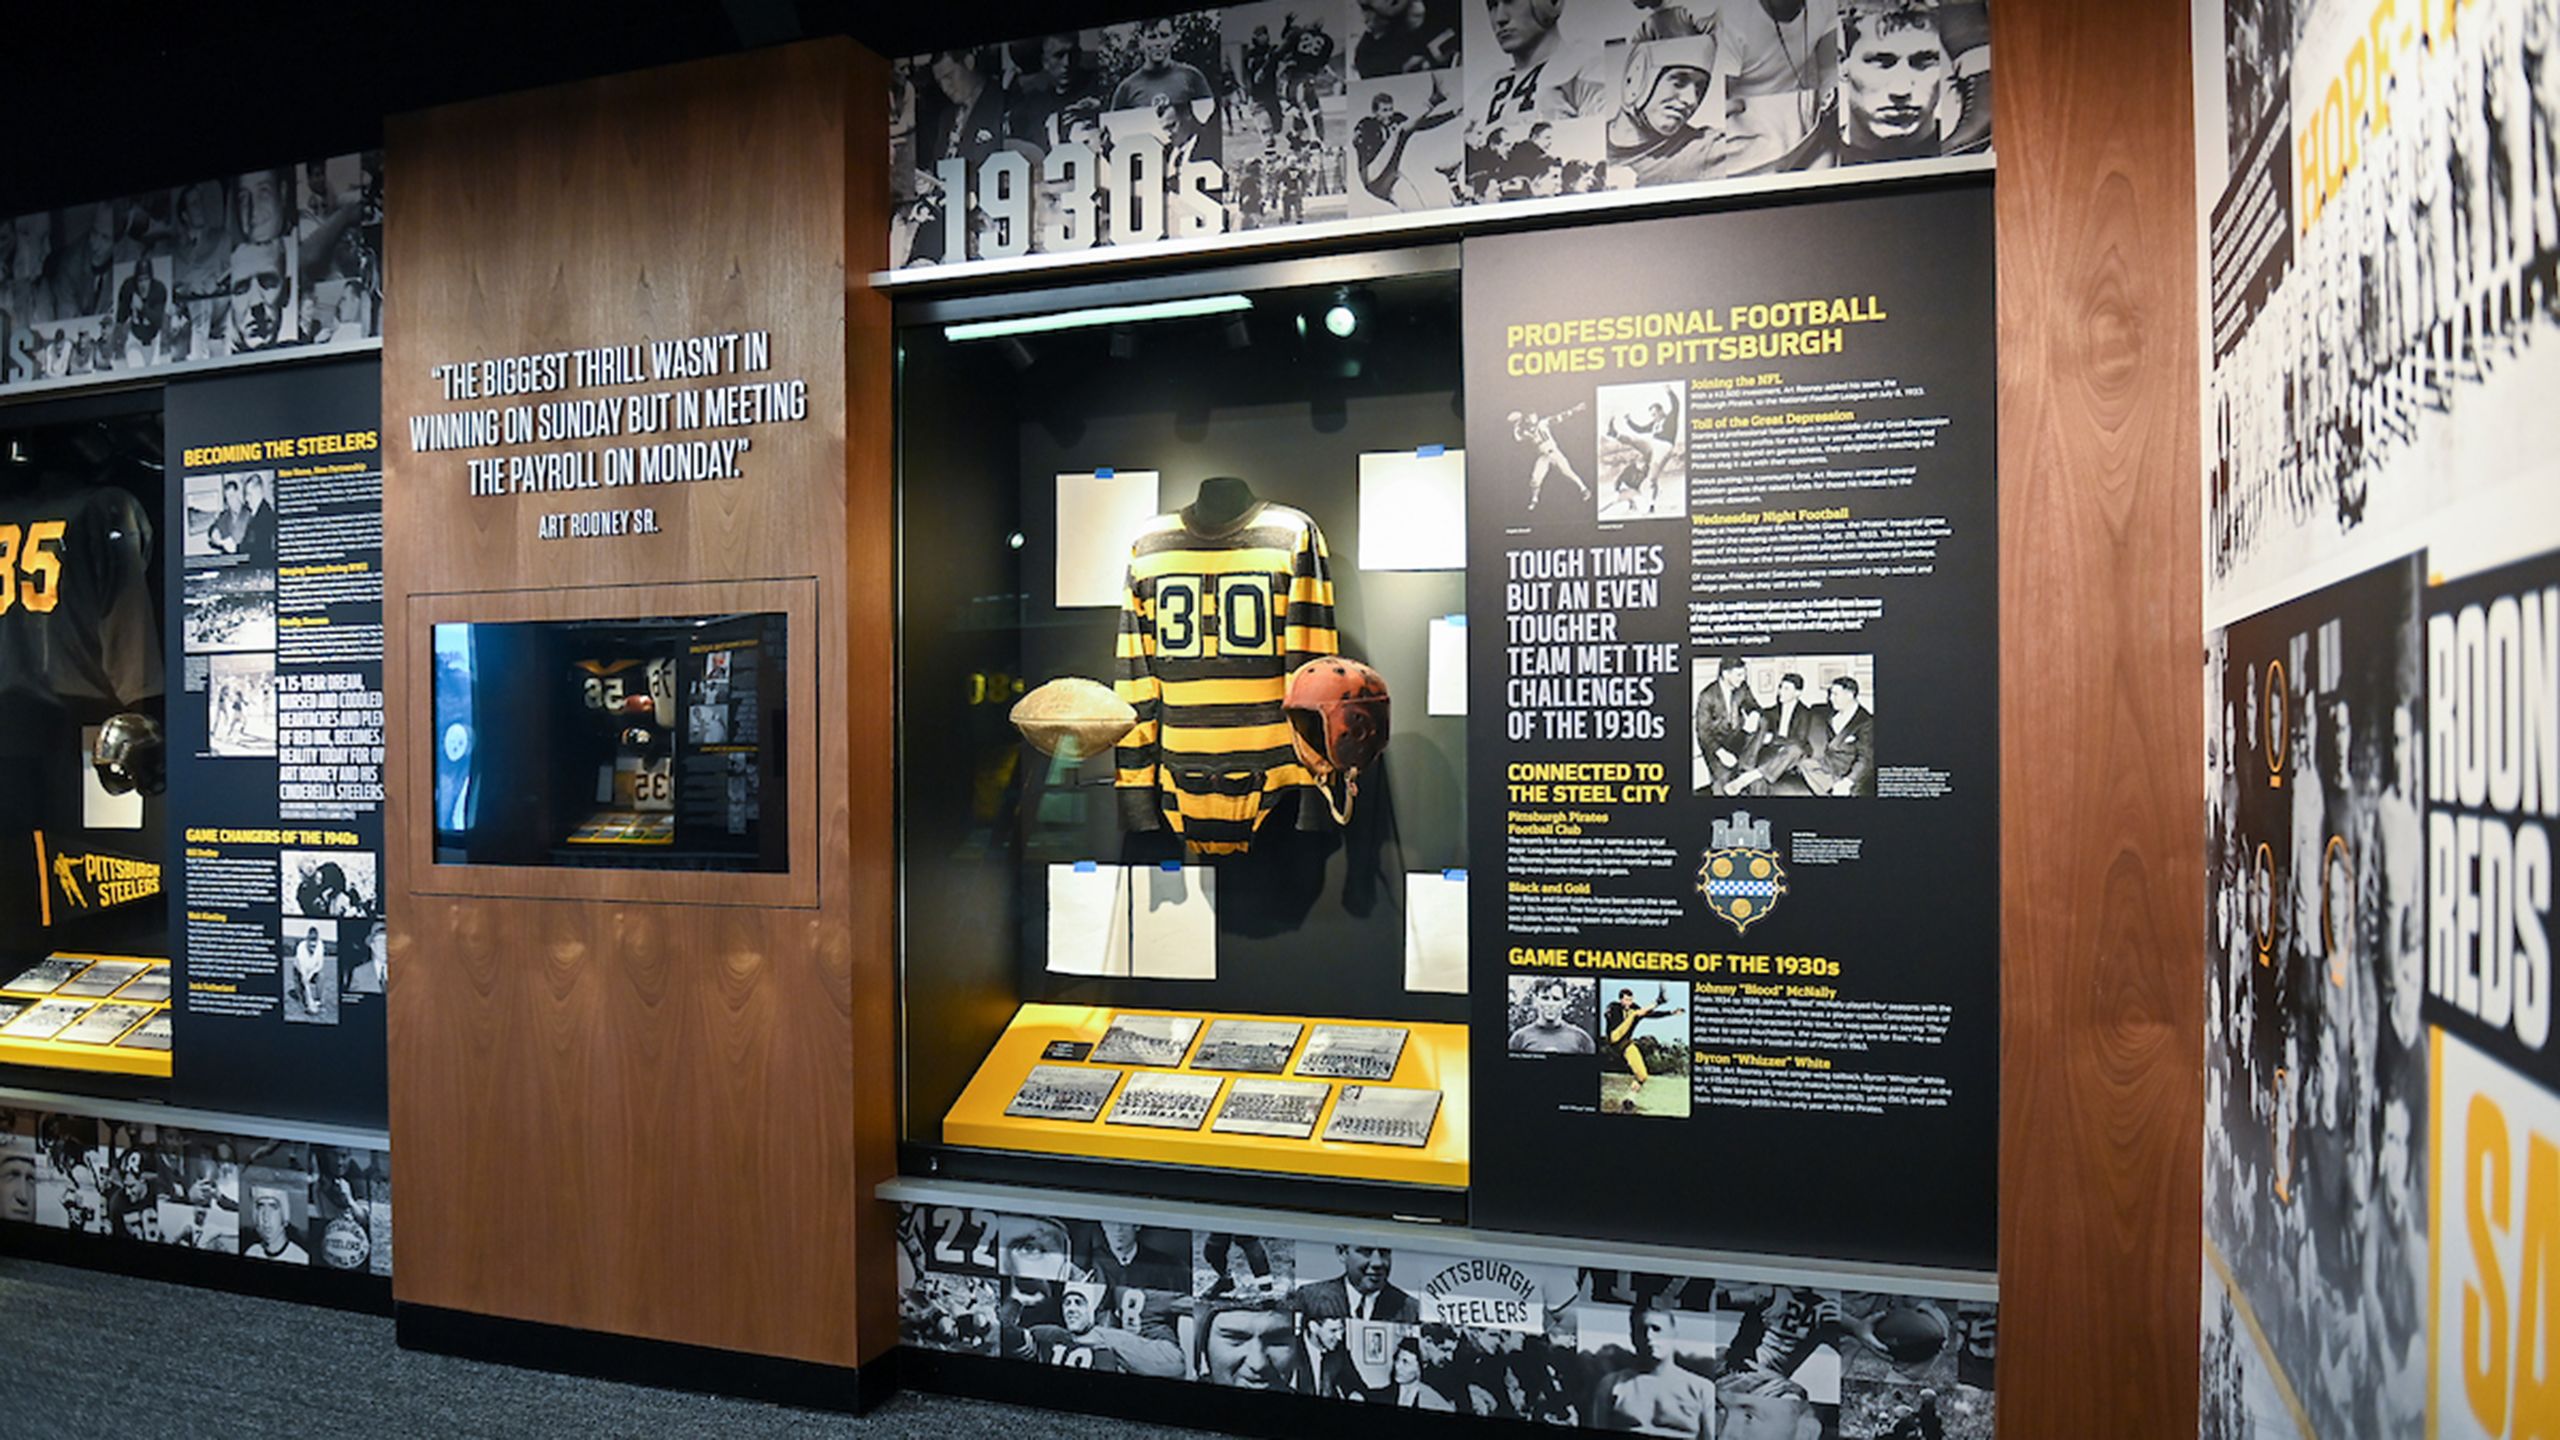 Steelers Hall of Honor Museum  Pittsburgh Steelers 